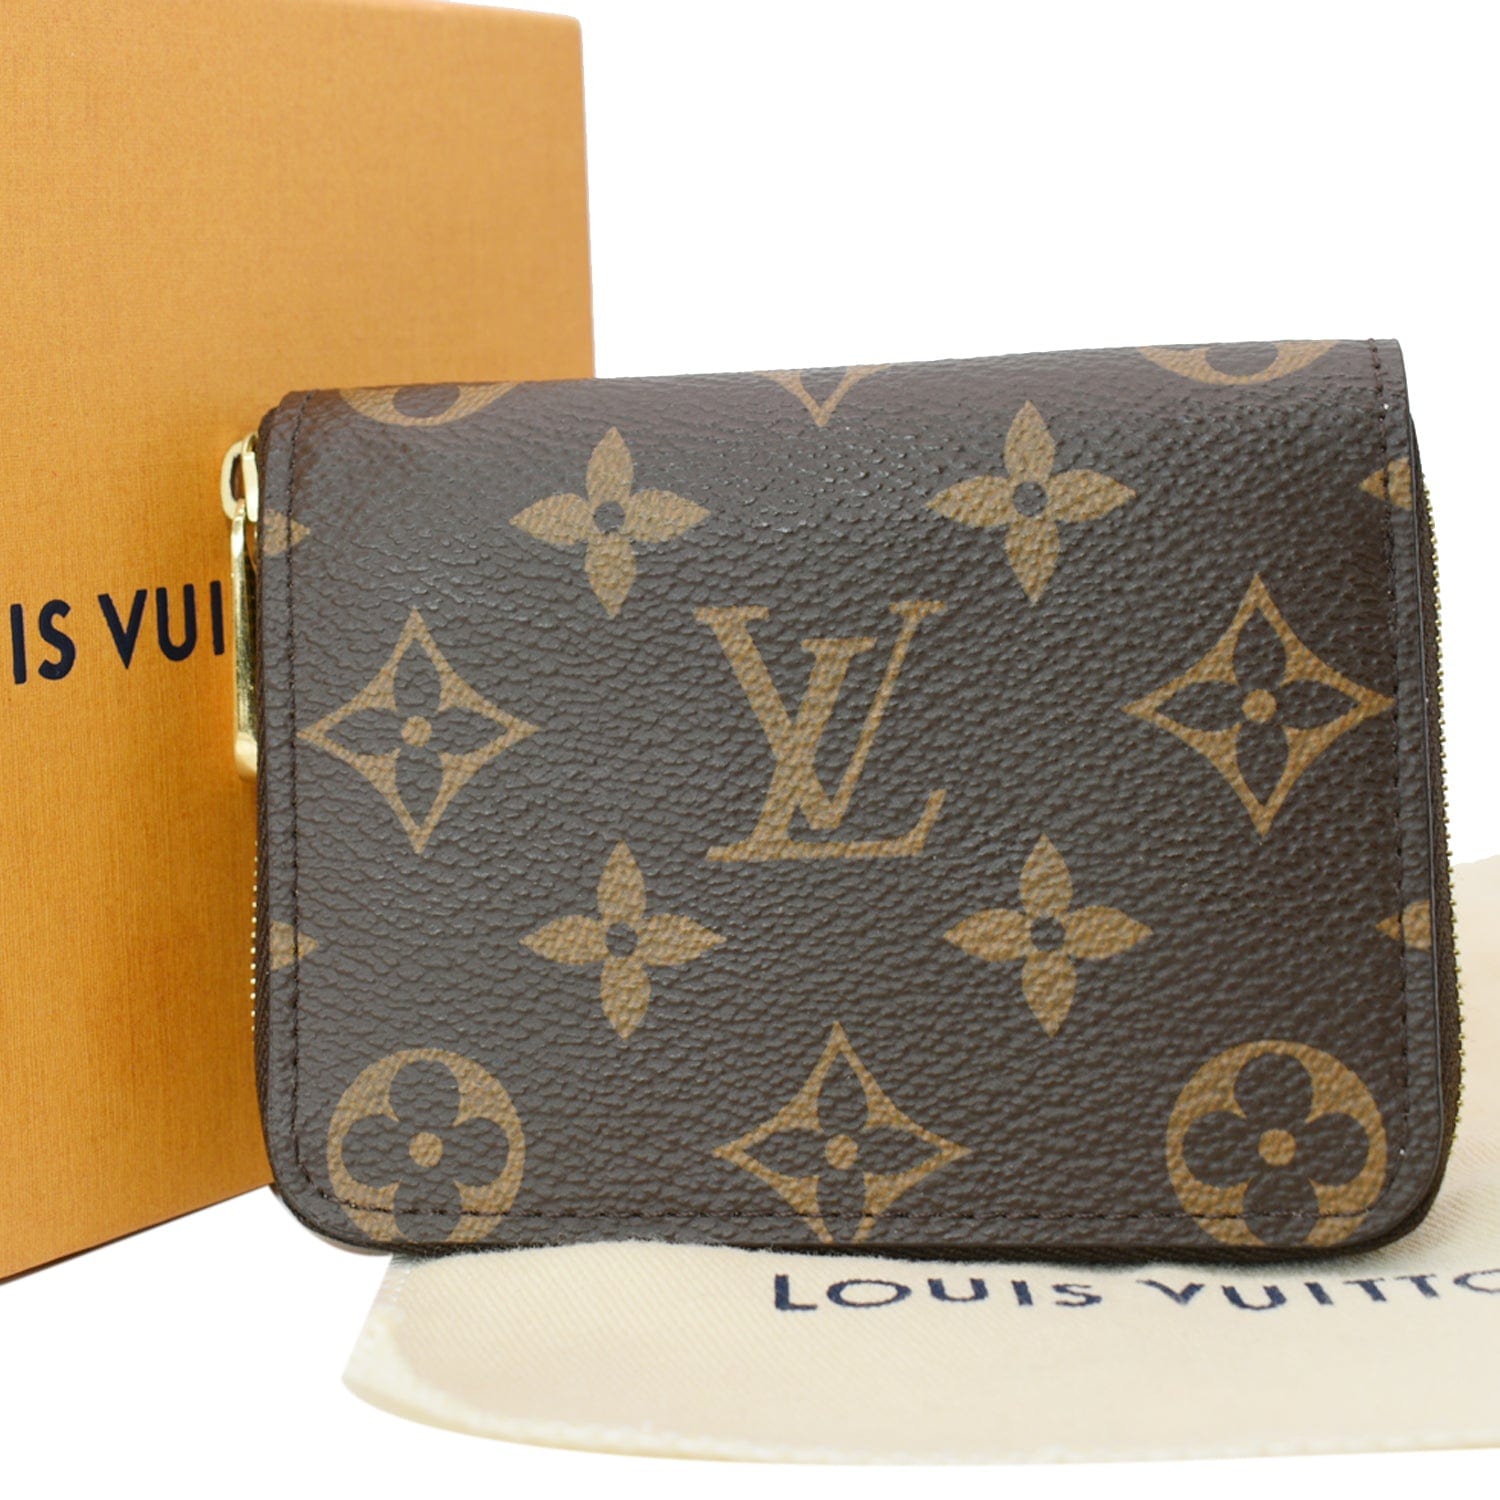 Louis Vuitton Crafty Zippy Coin Purse Caramel/Cream in Monogram